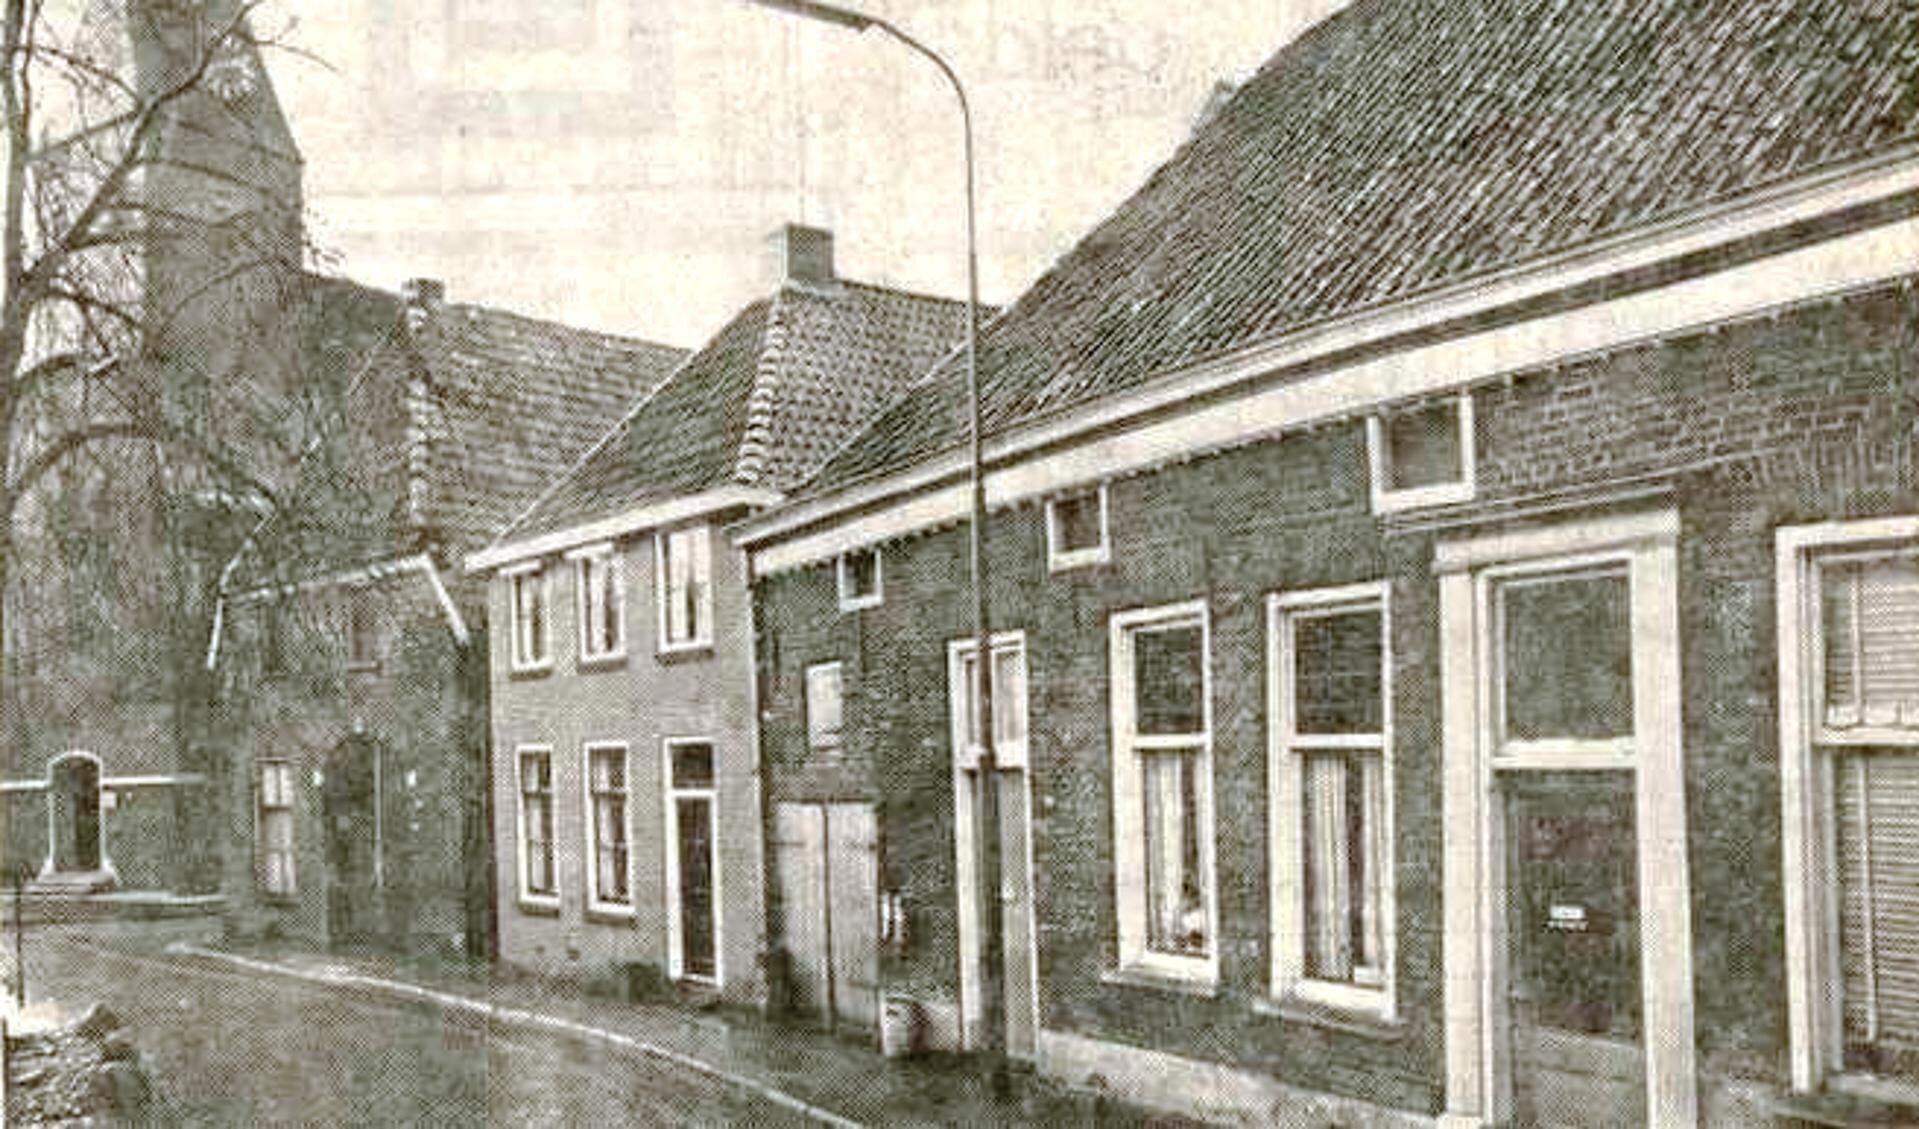 Markt Bredevoort, 1970. Foto: collectie Leo van der Linde